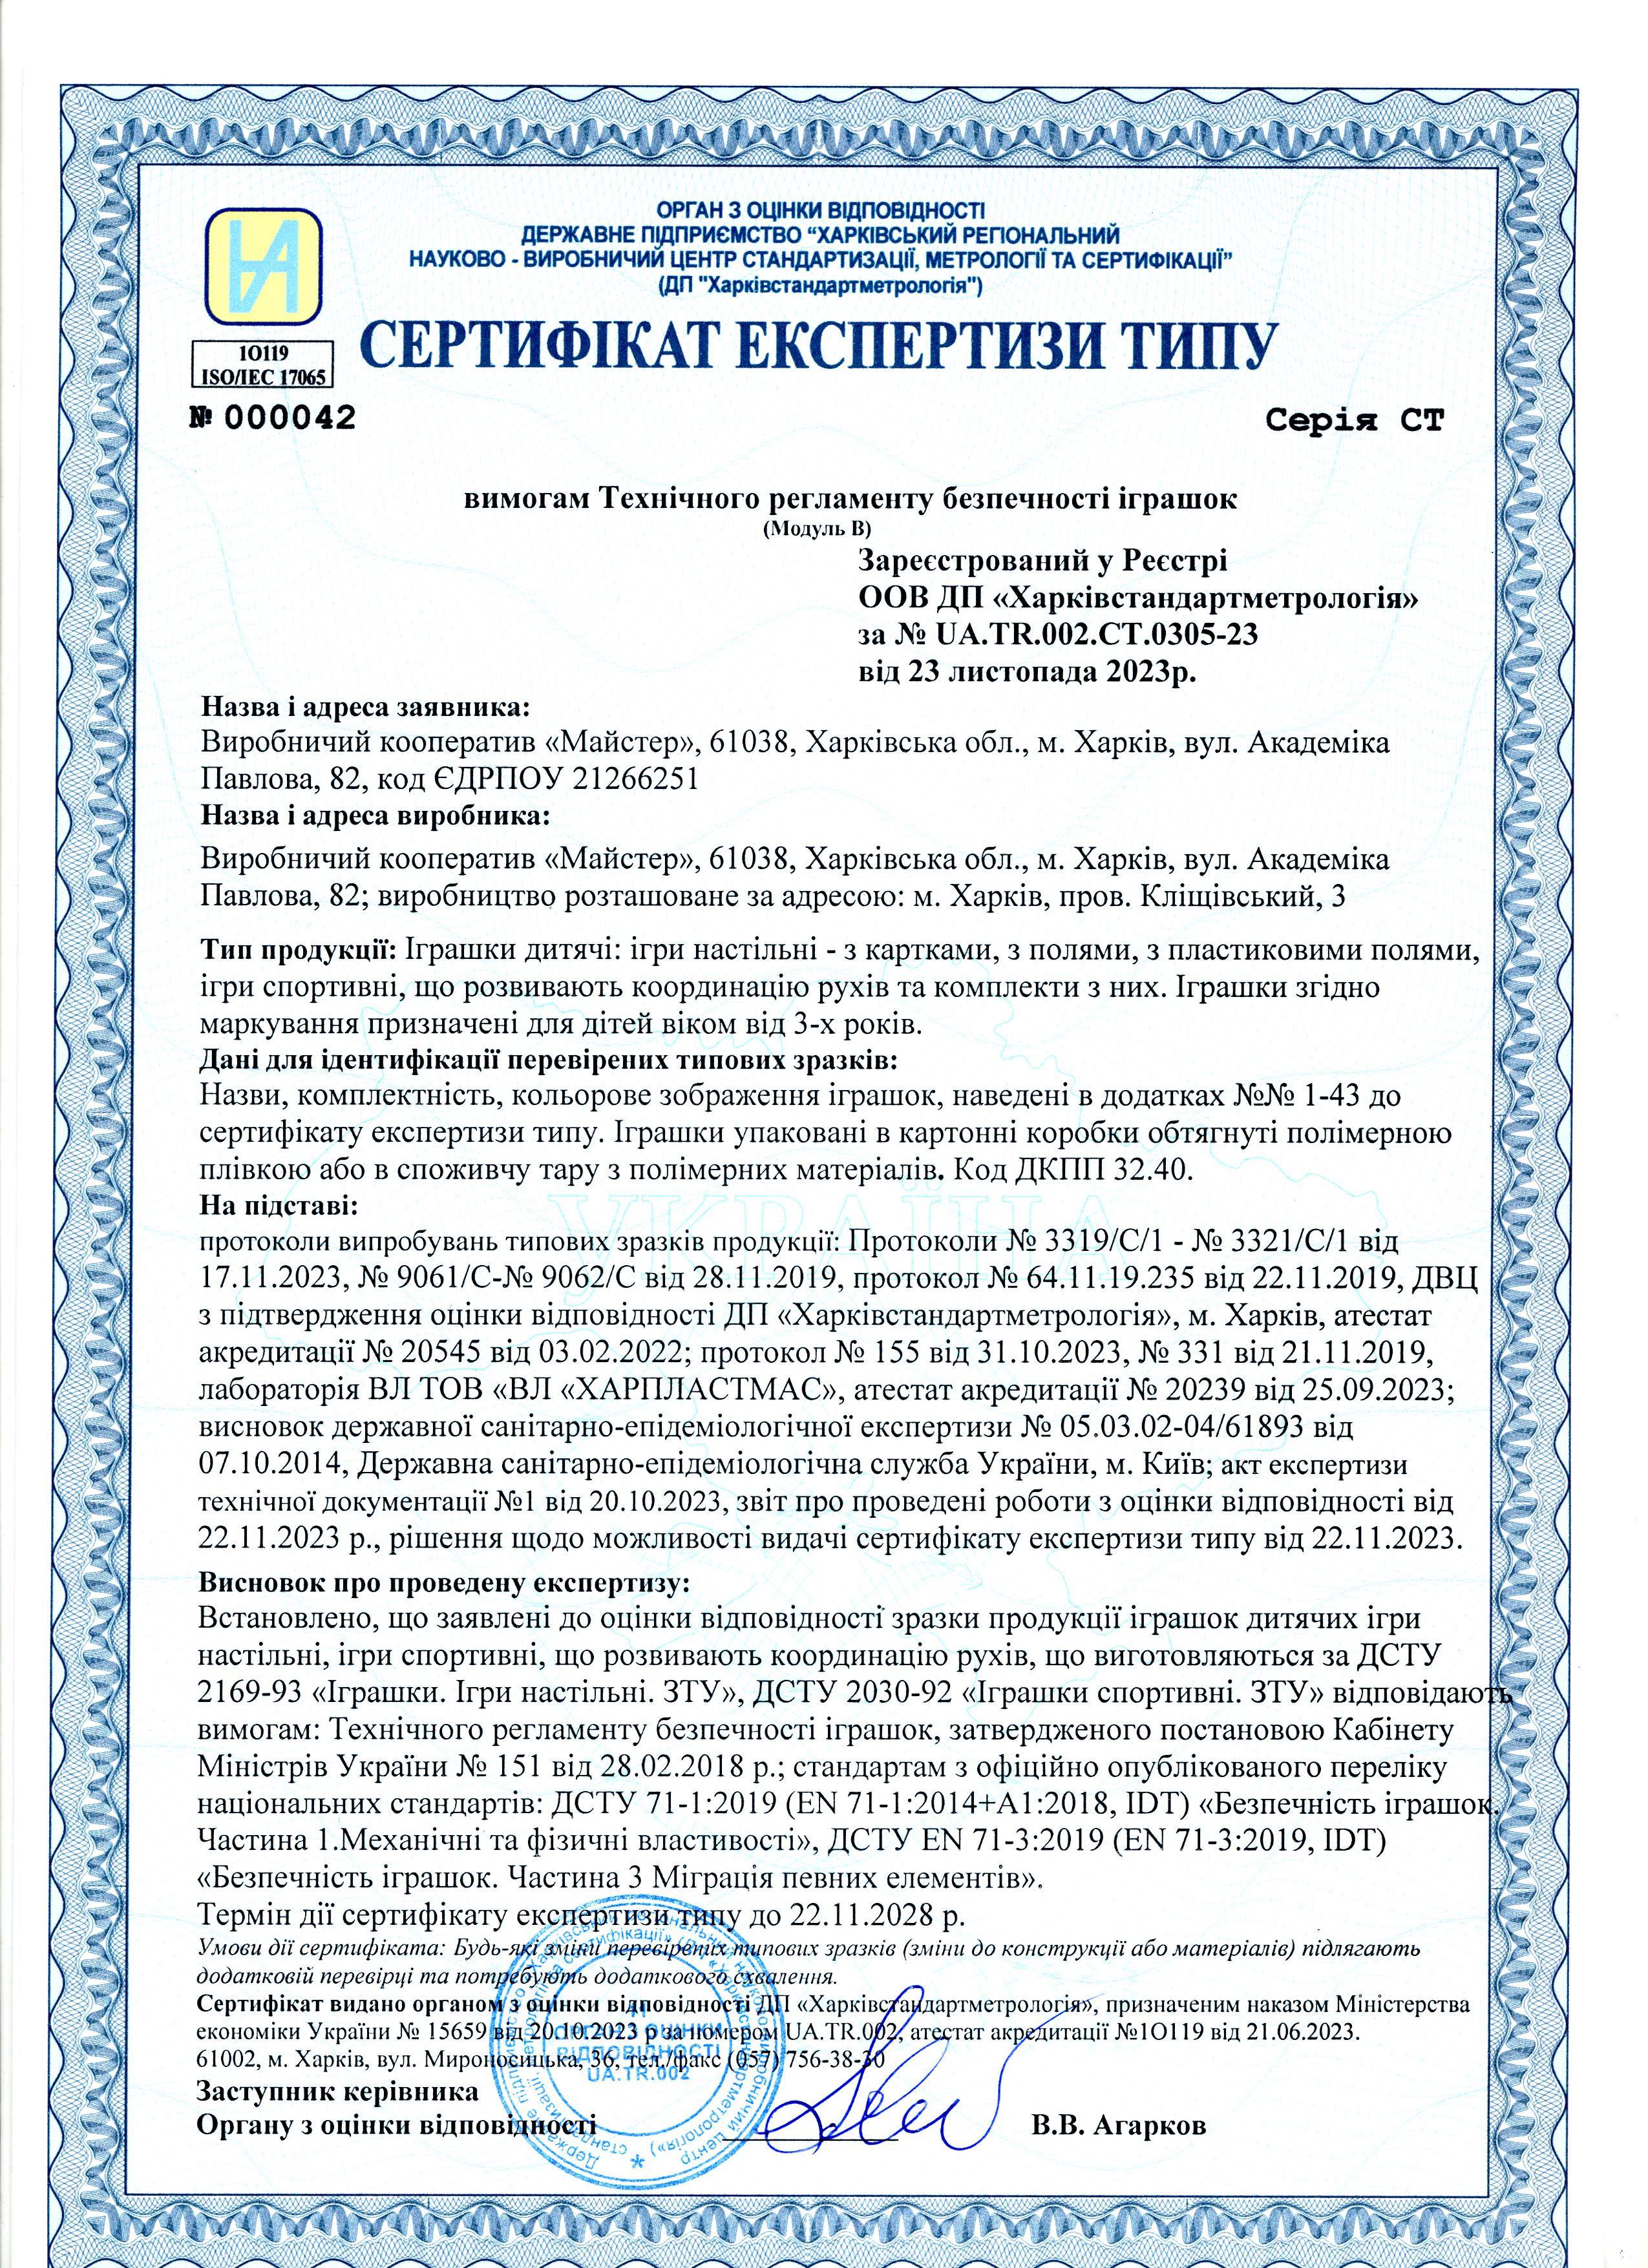 Сертифікат експертизи ТИПУ 2023